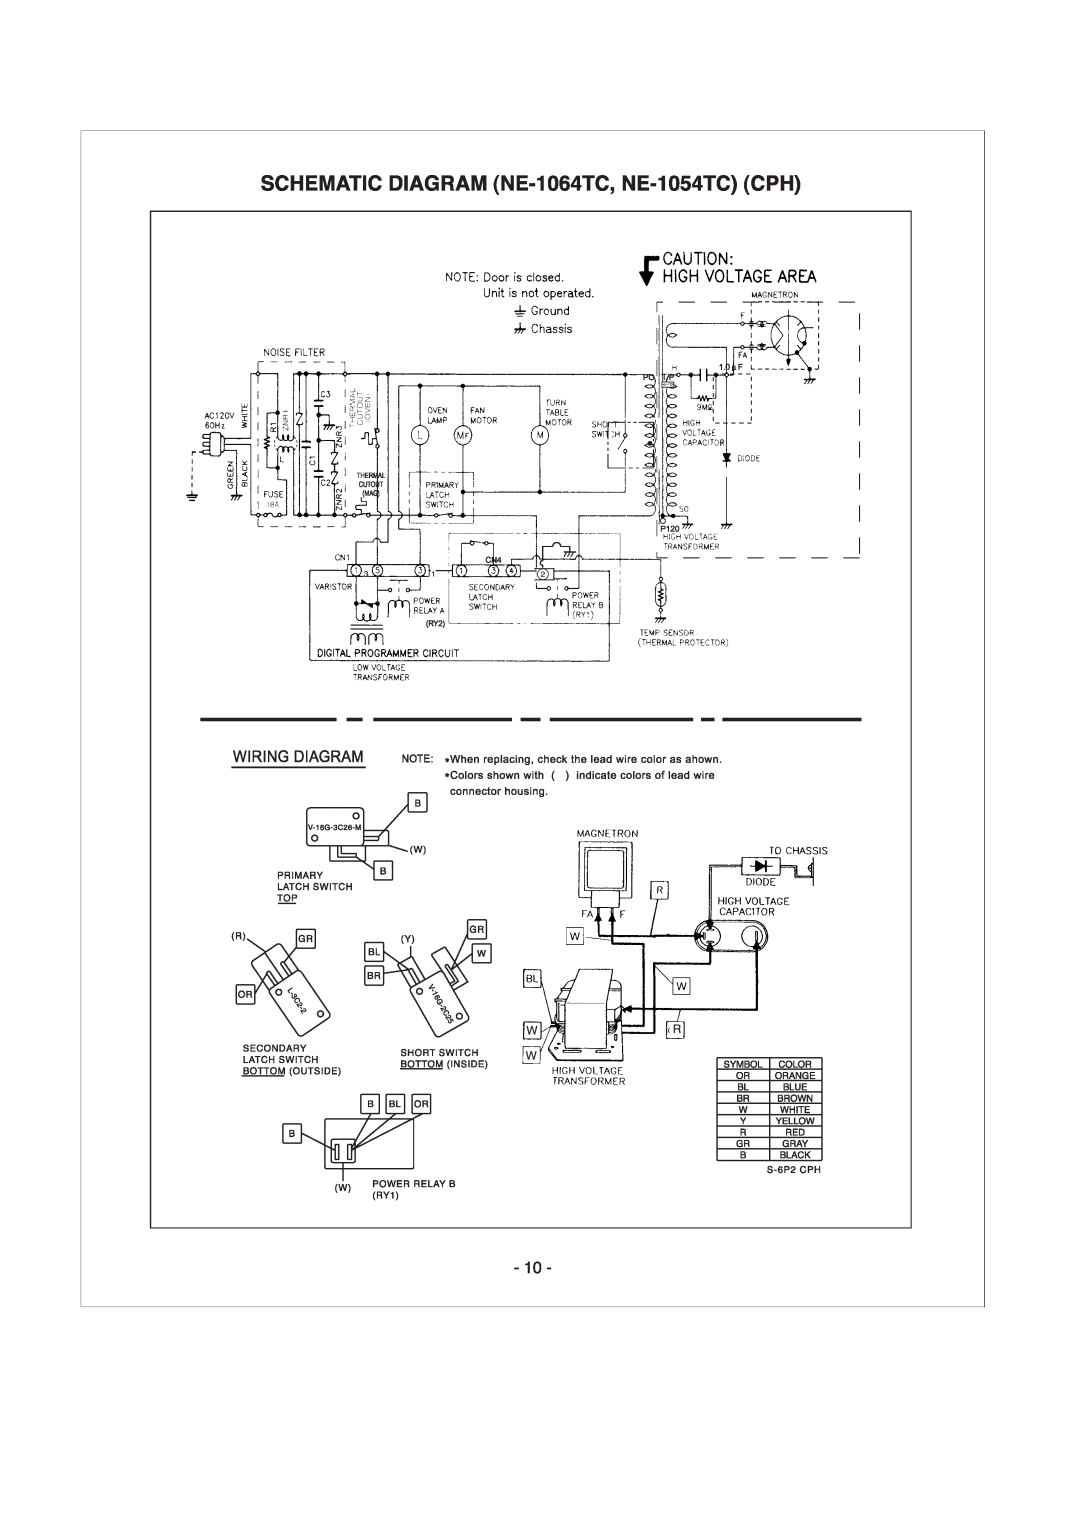 Panasonic NE-1024TC, NE-1064TC, NE-1054TC manual 